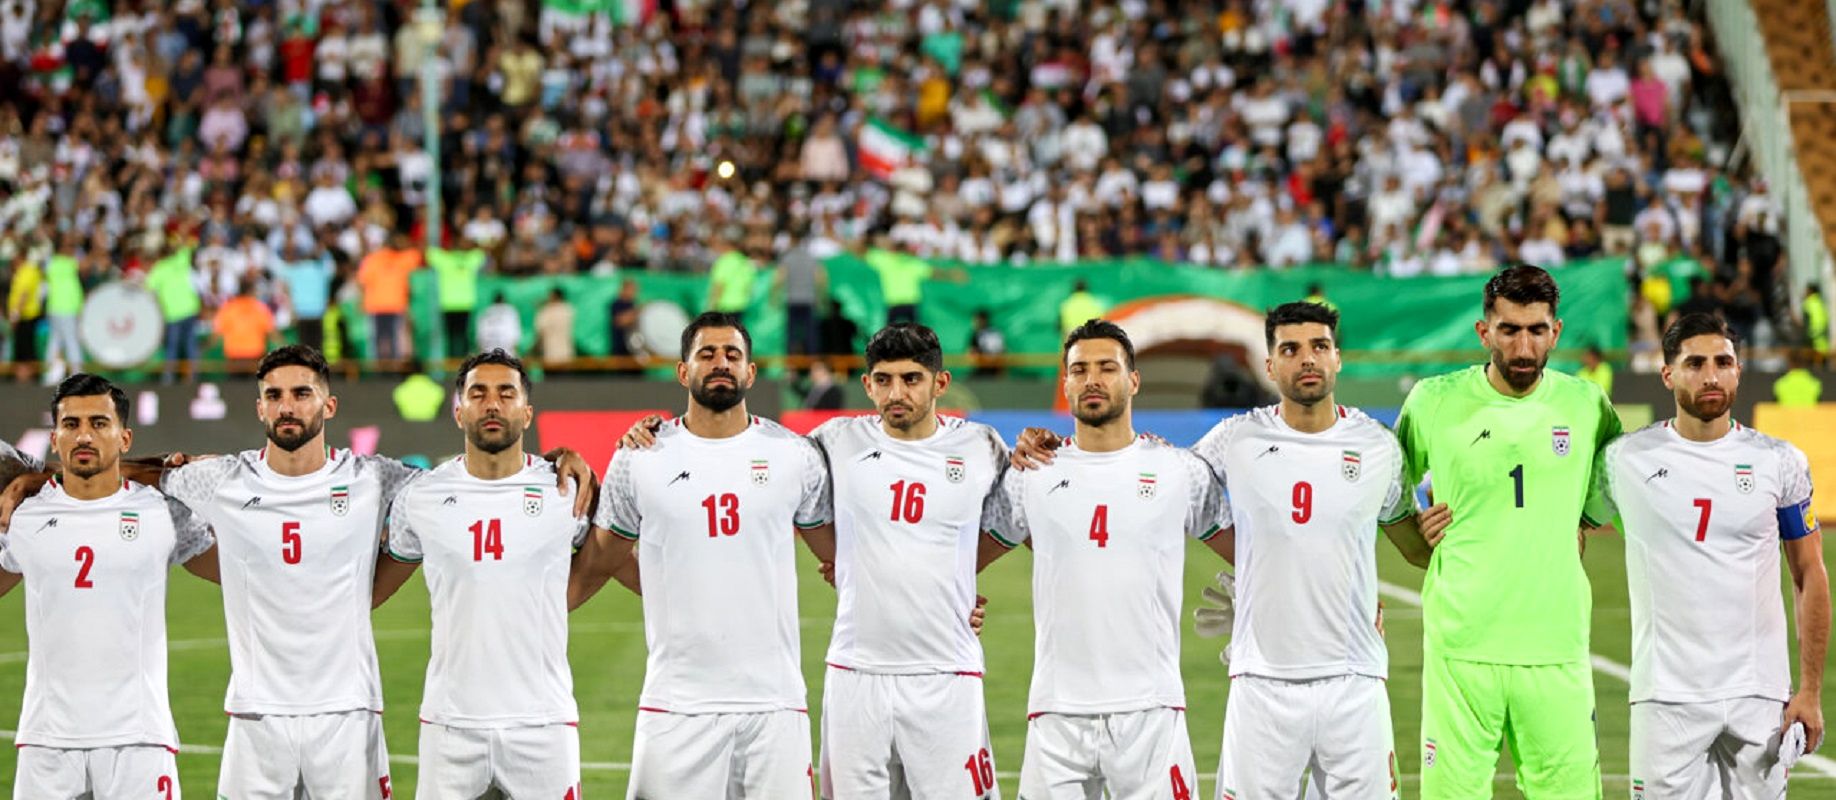 جایگاه ایران در رقابت های جام جهانی مشخص شد / دیدارانتقامی با قطر + جدول